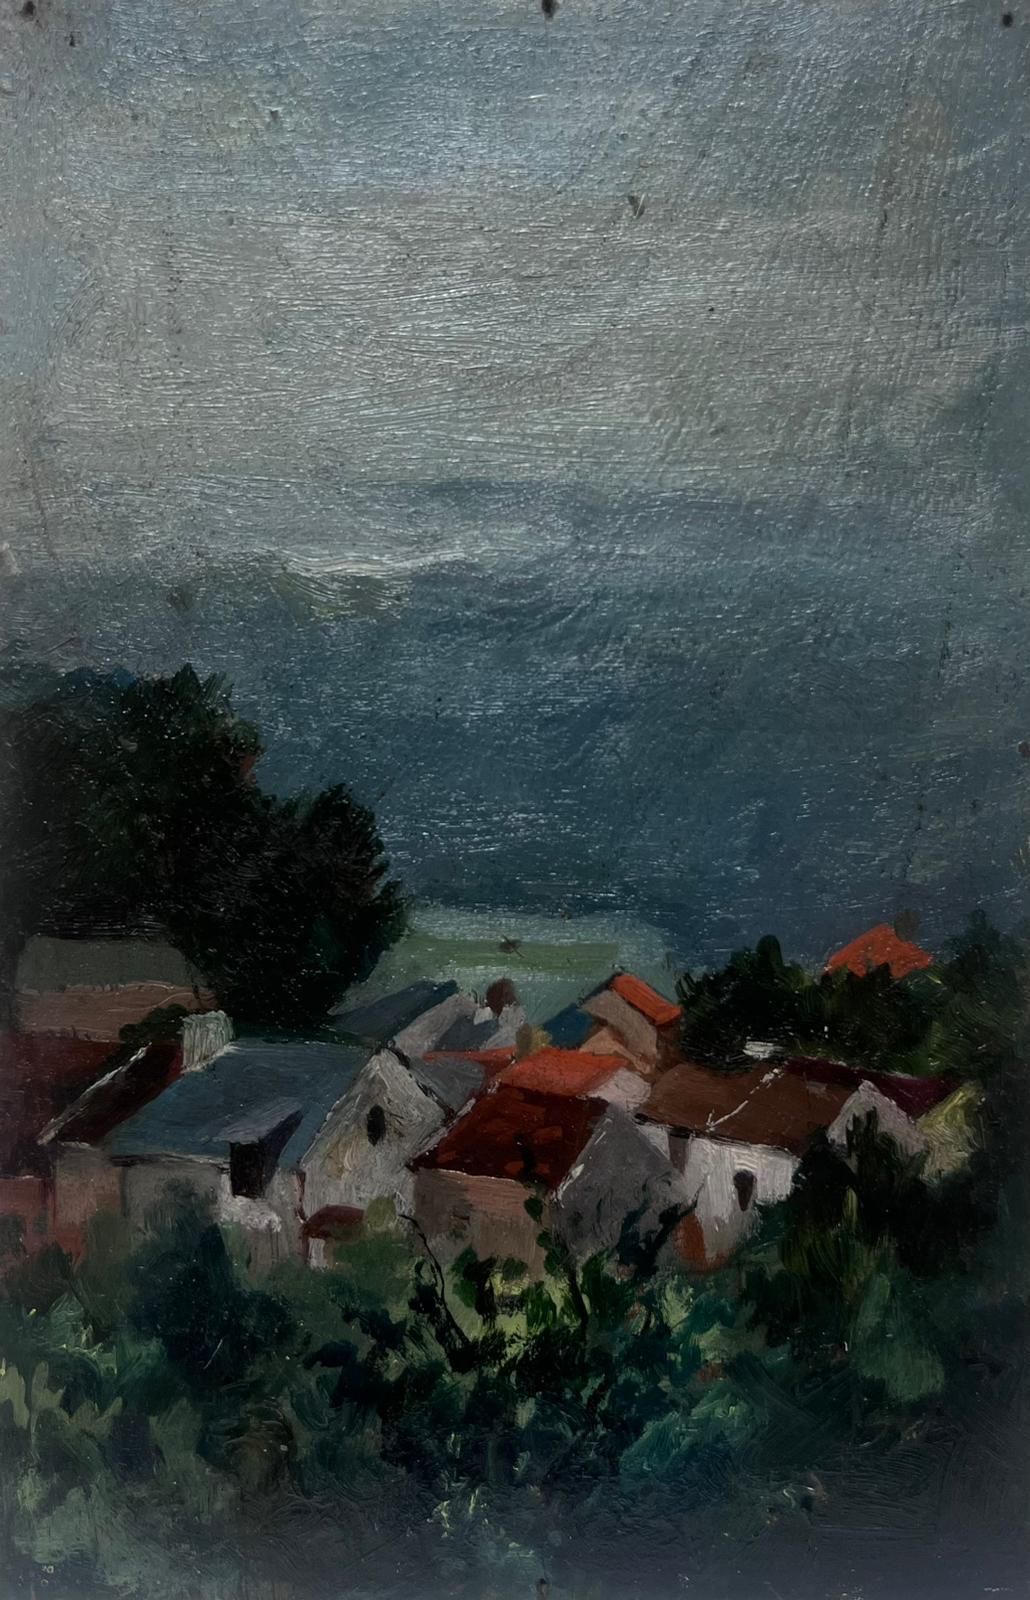 Landscape Painting Louise Alix - Paysage à l'huile des années 1930 des maisons françaises aux toits colorés surplombant la mer 